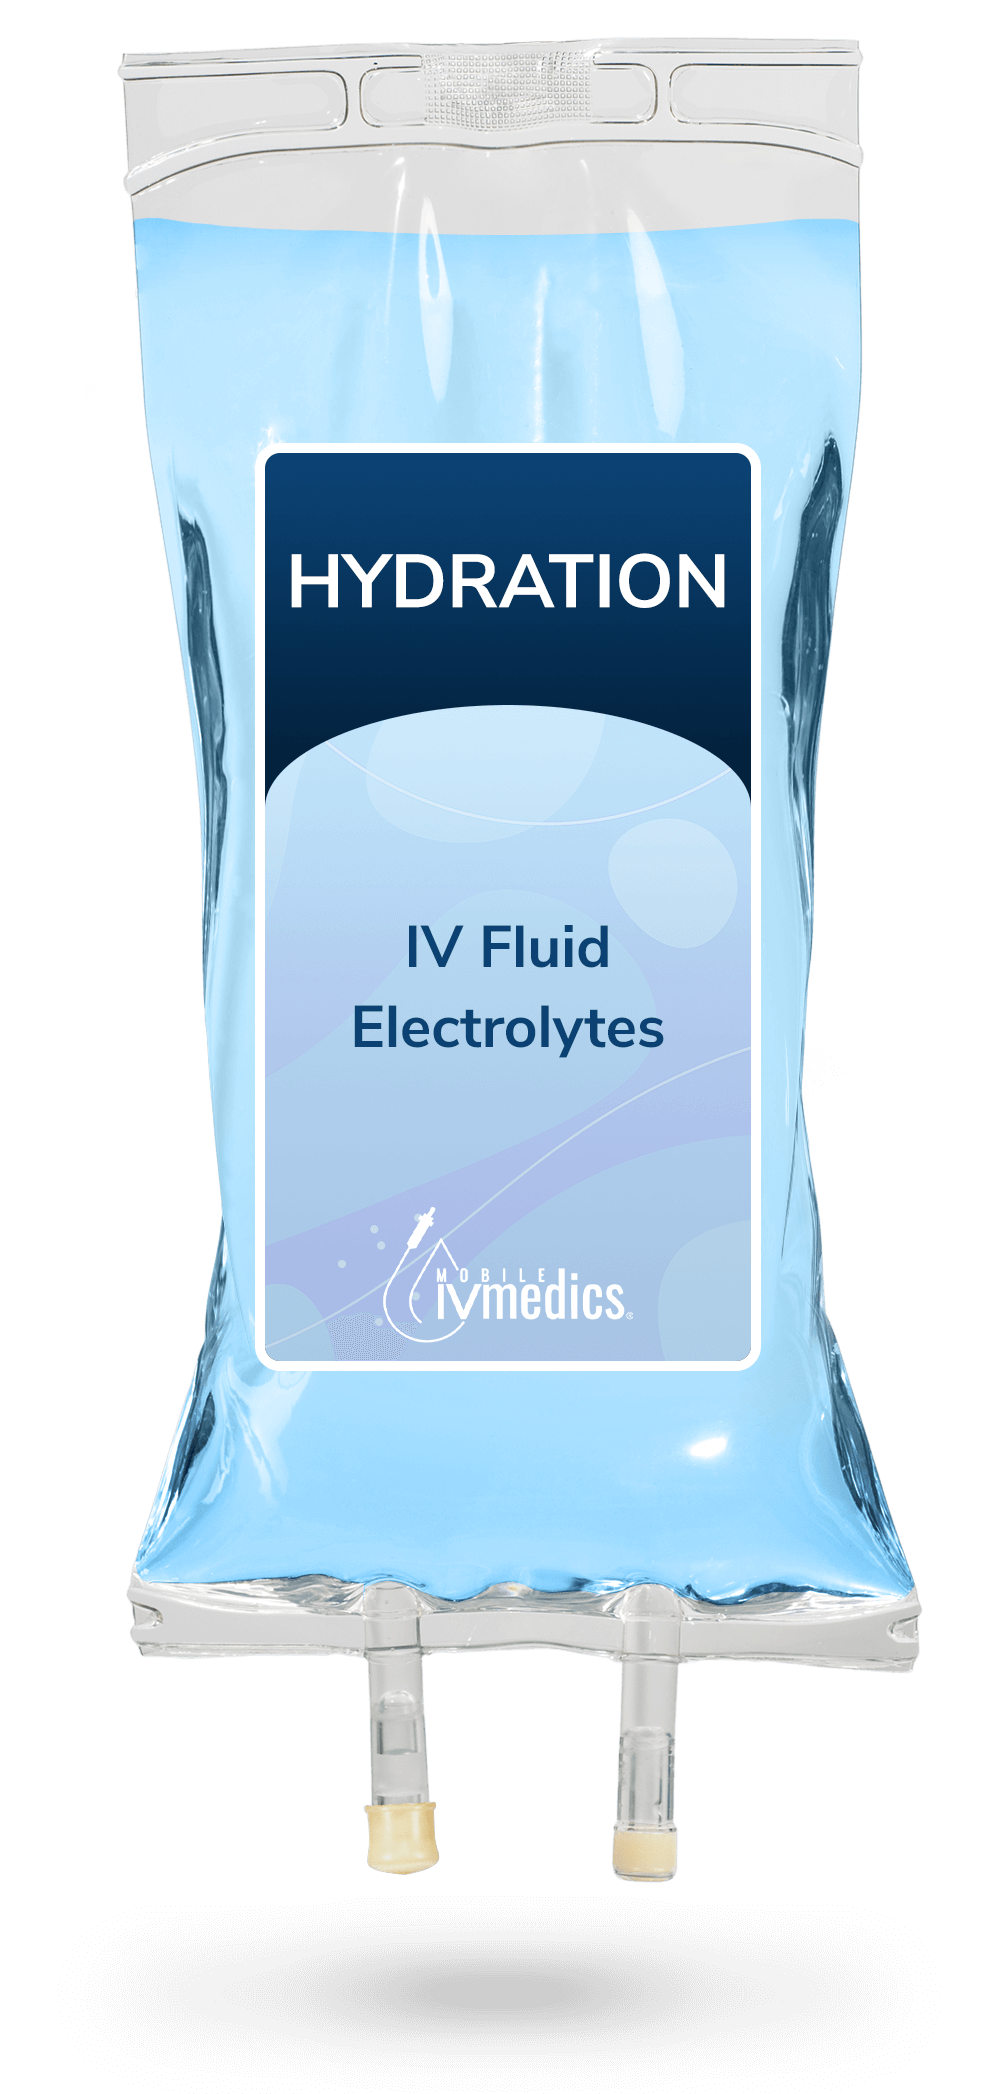 IV hydration